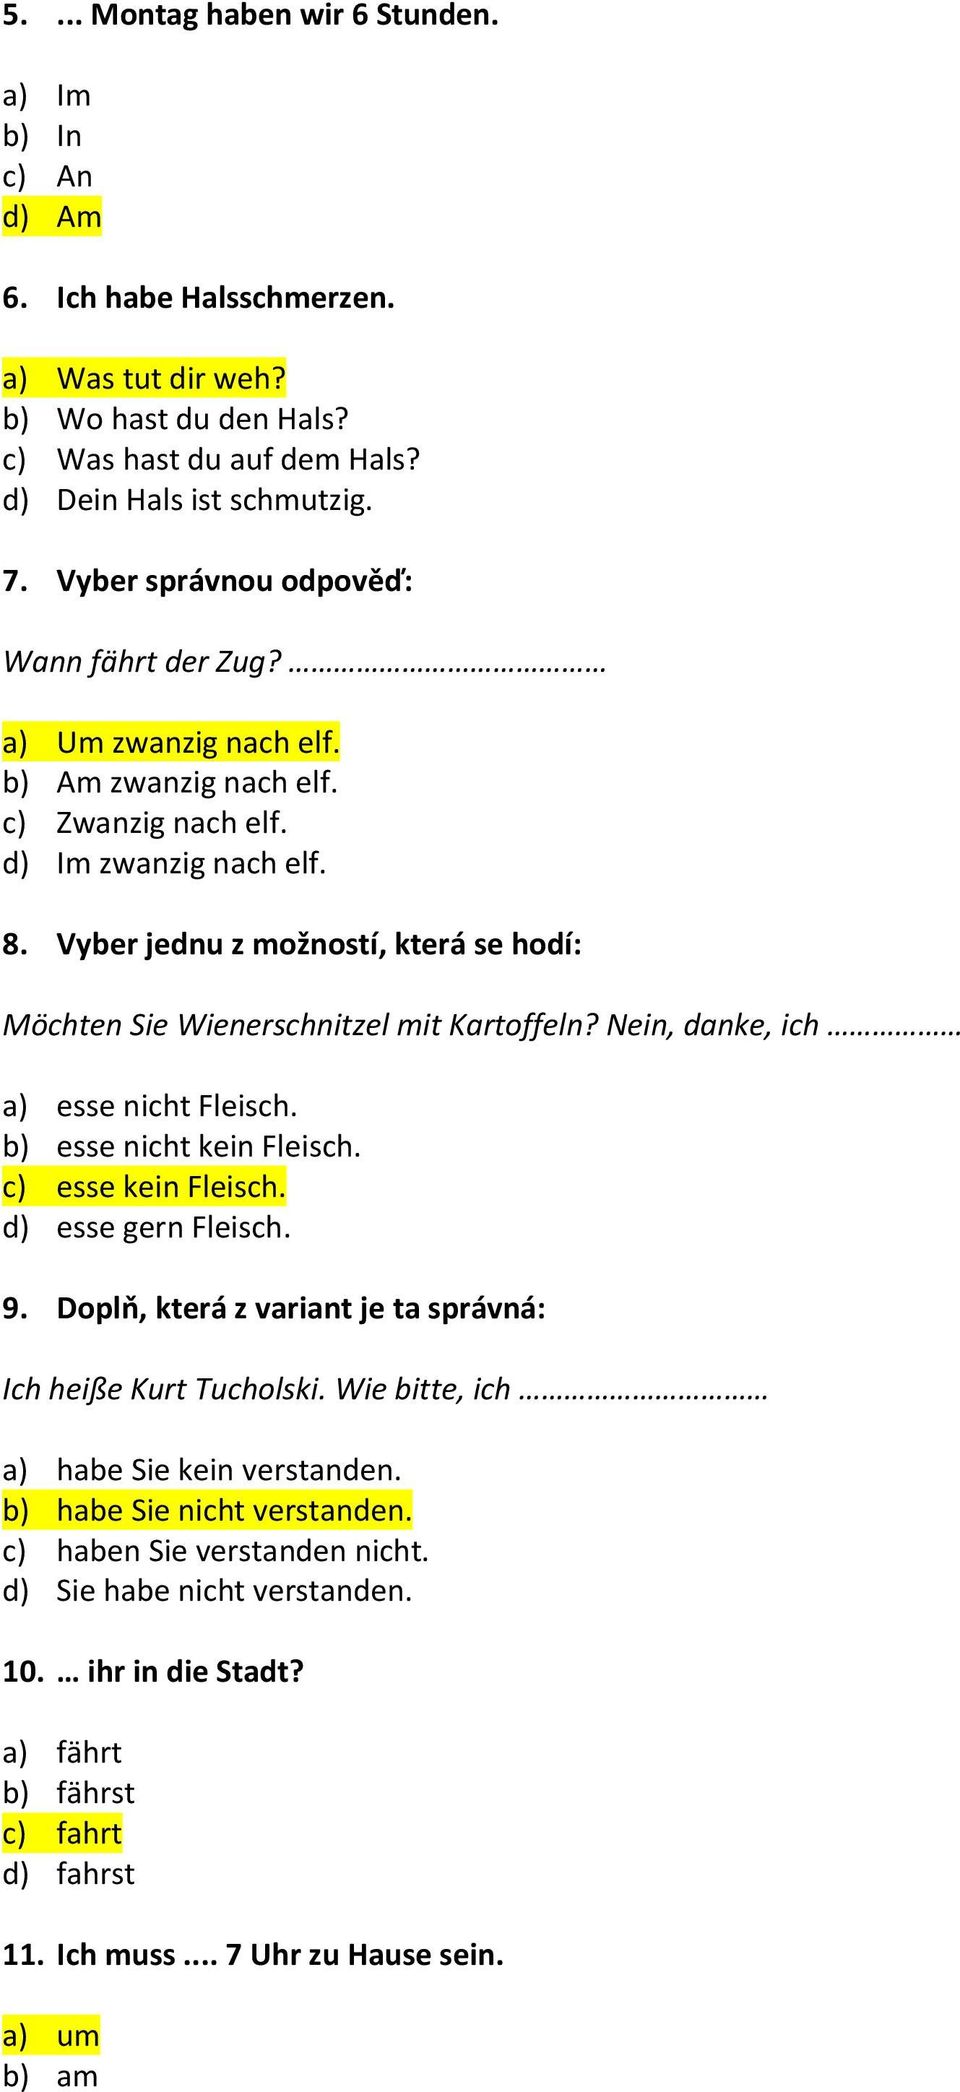 Vyber jednu z možností, která se hodí: Möchten Sie Wienerschnitzel mit Kartoffeln? Nein, danke, ich a) esse nicht Fleisch. b) esse nicht kein Fleisch. c) esse kein Fleisch. d) esse gern Fleisch. 9.